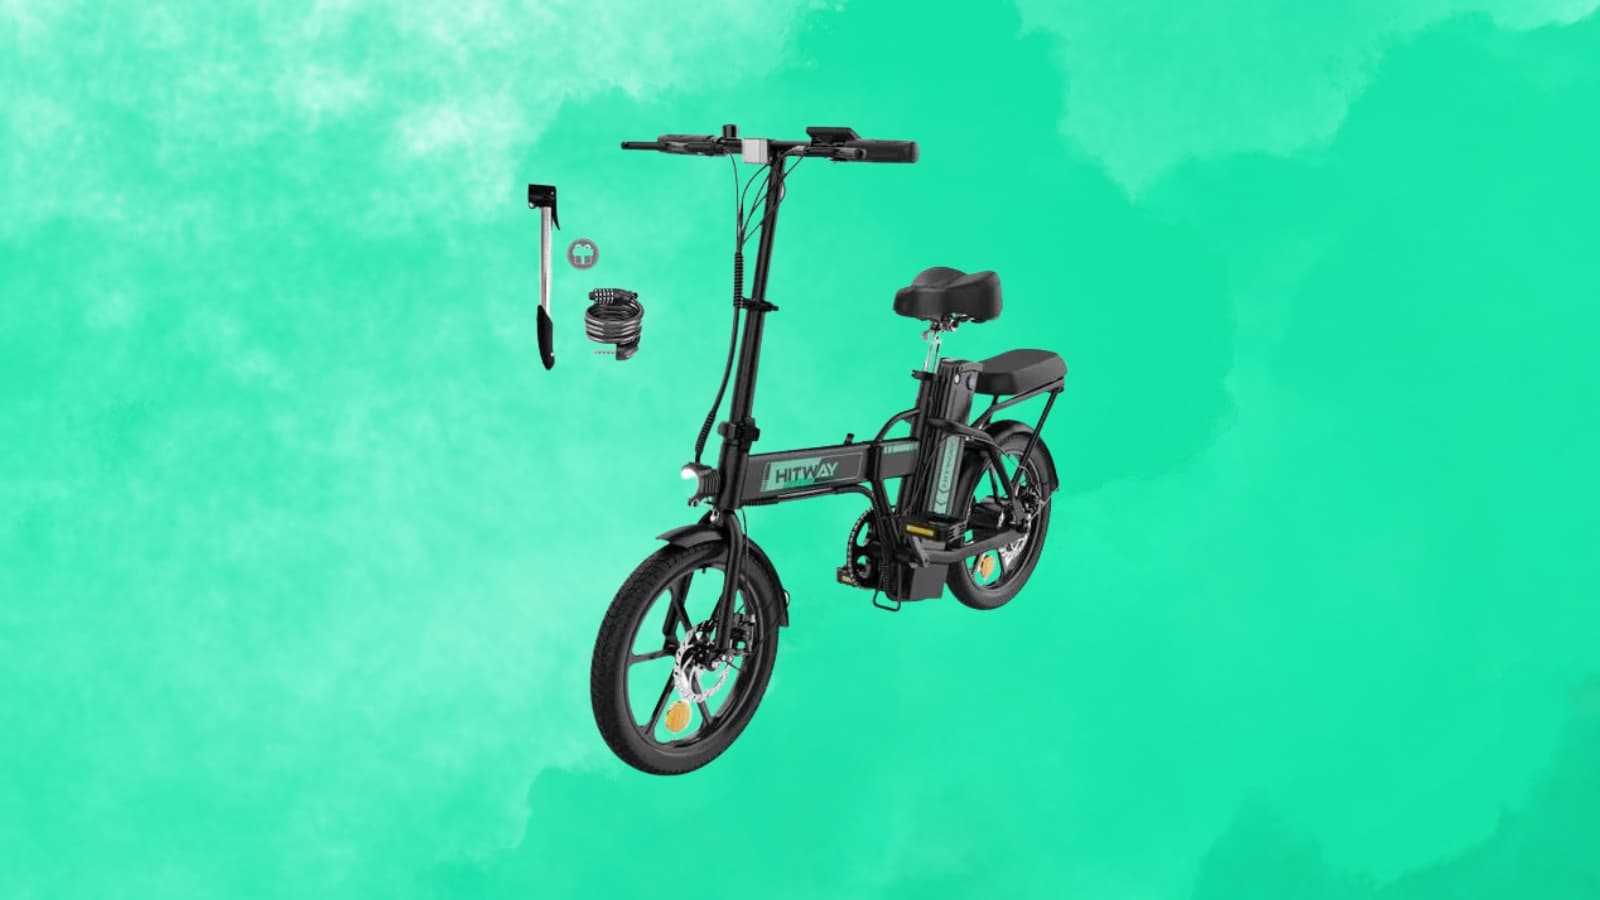 bon plan cdiscount : profitez d'un vélo électrique à prix réduit pendant les soldes